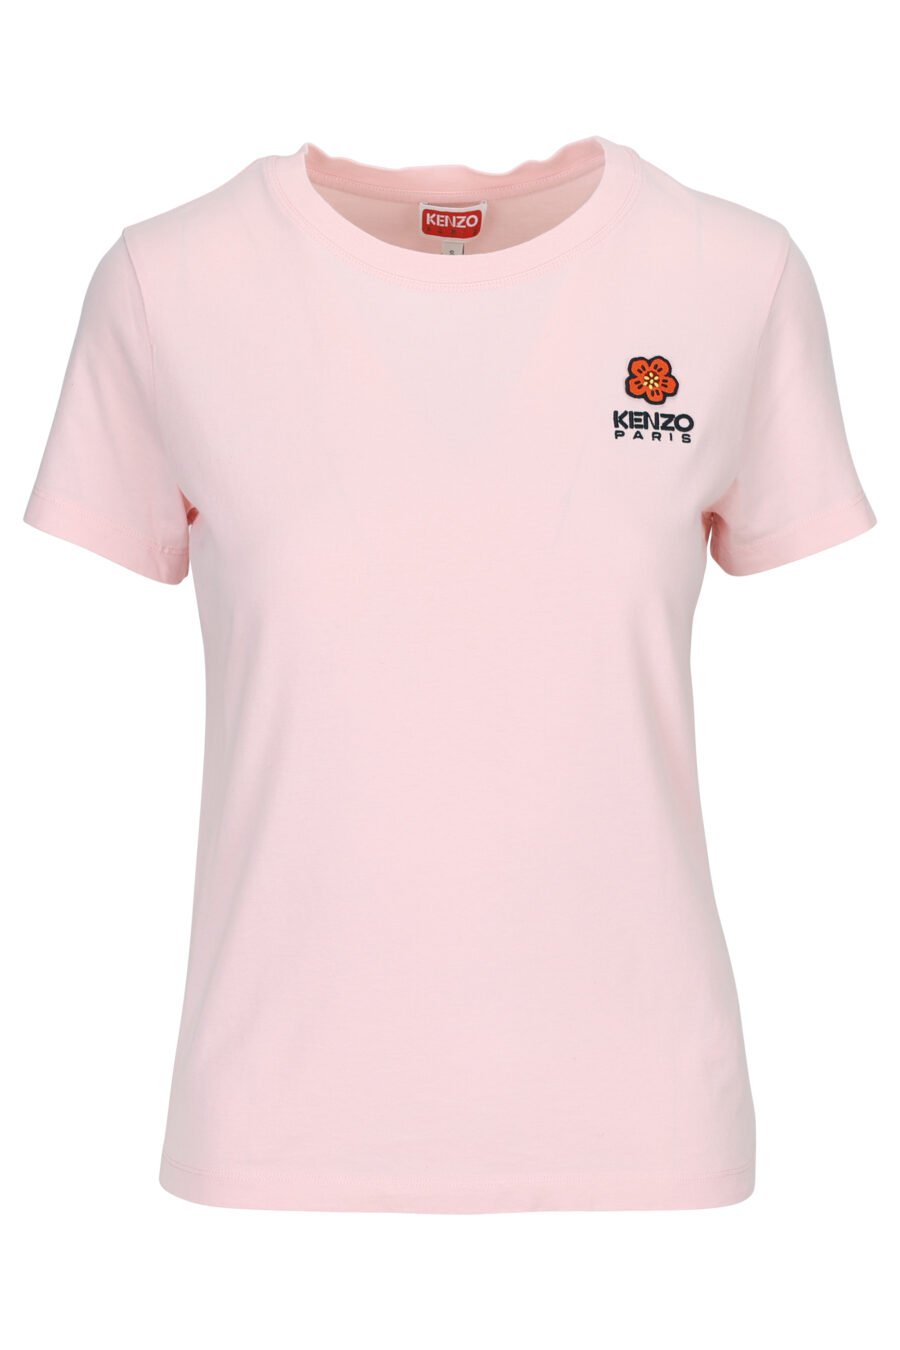 T-shirt rose avec mini logo "boke flower" - 3612230483330